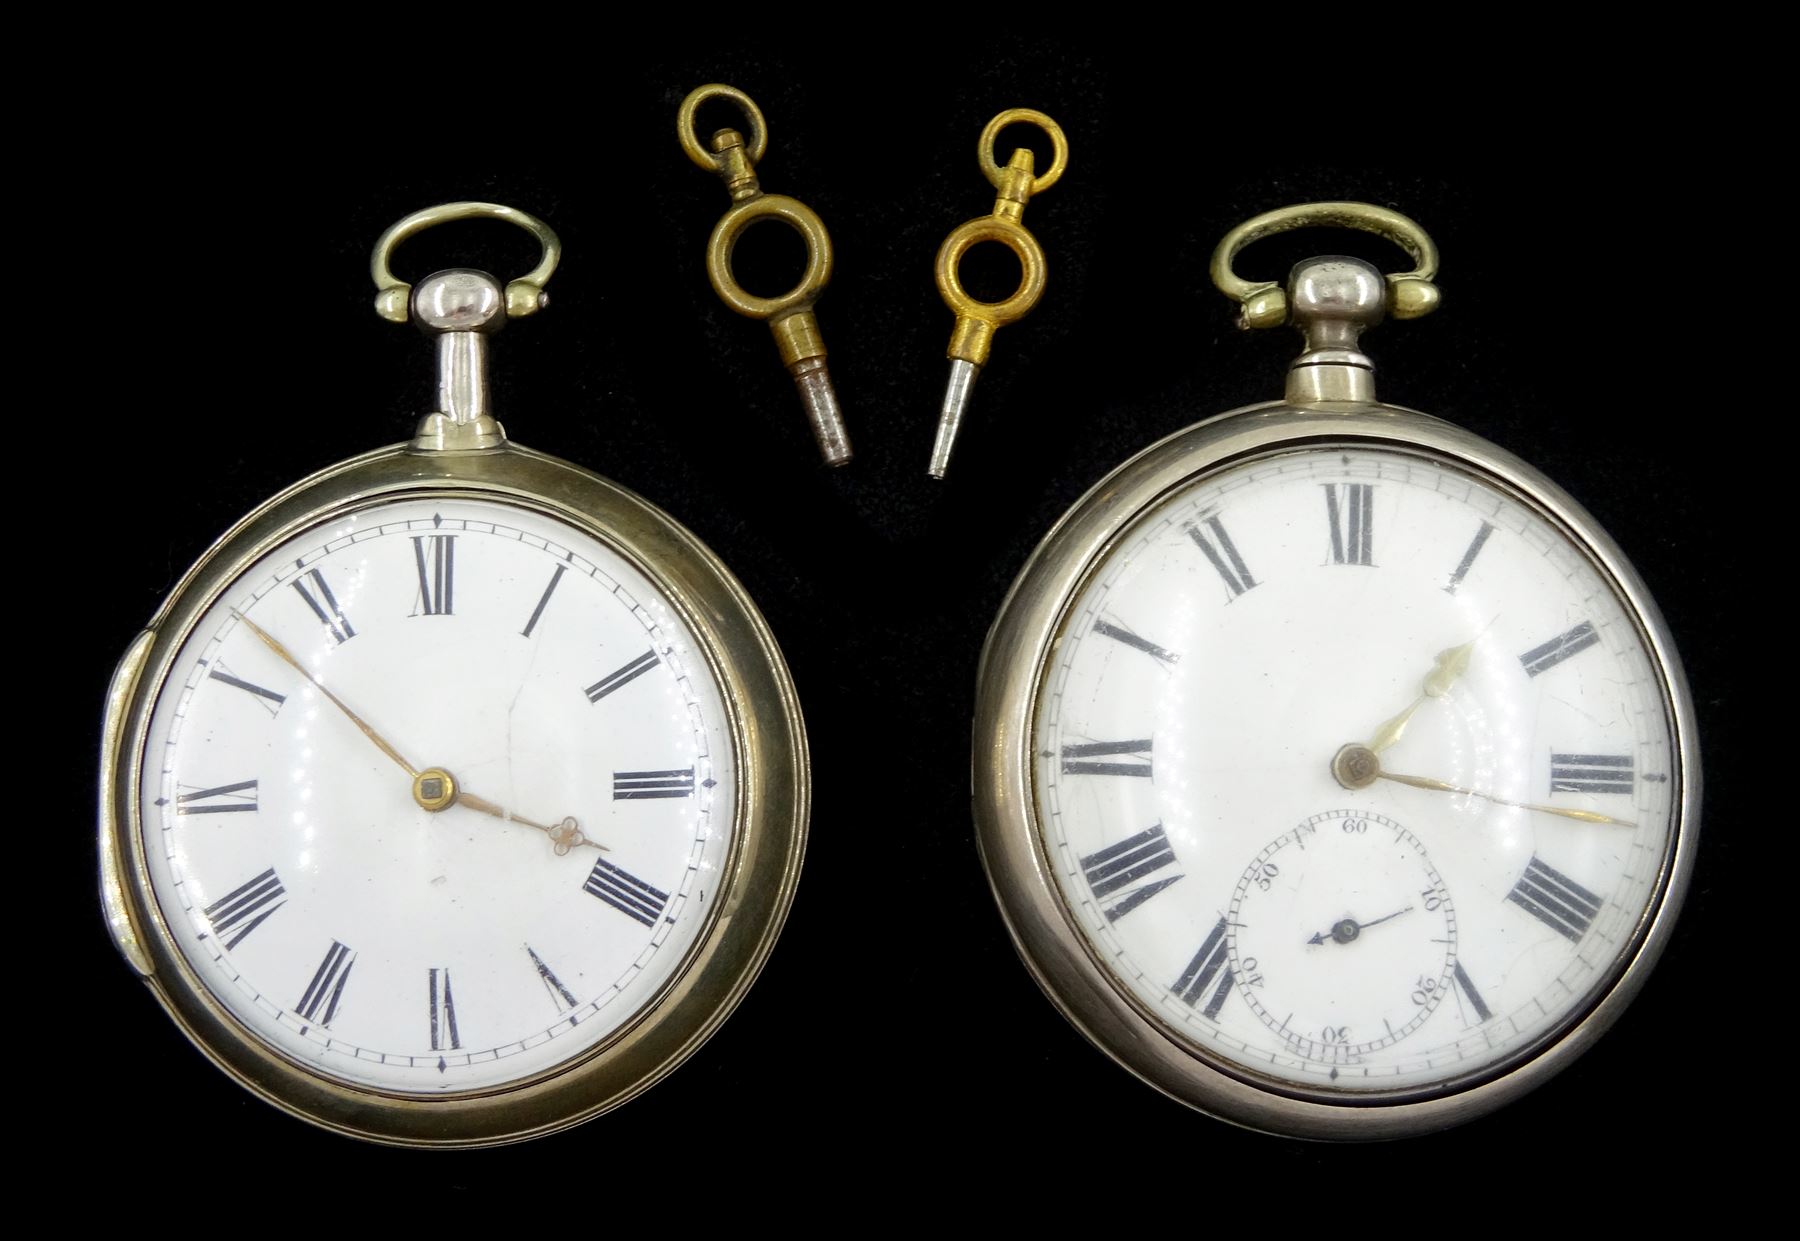 George III silver pair cased verge fusee pocket watch by Thomas Woodward